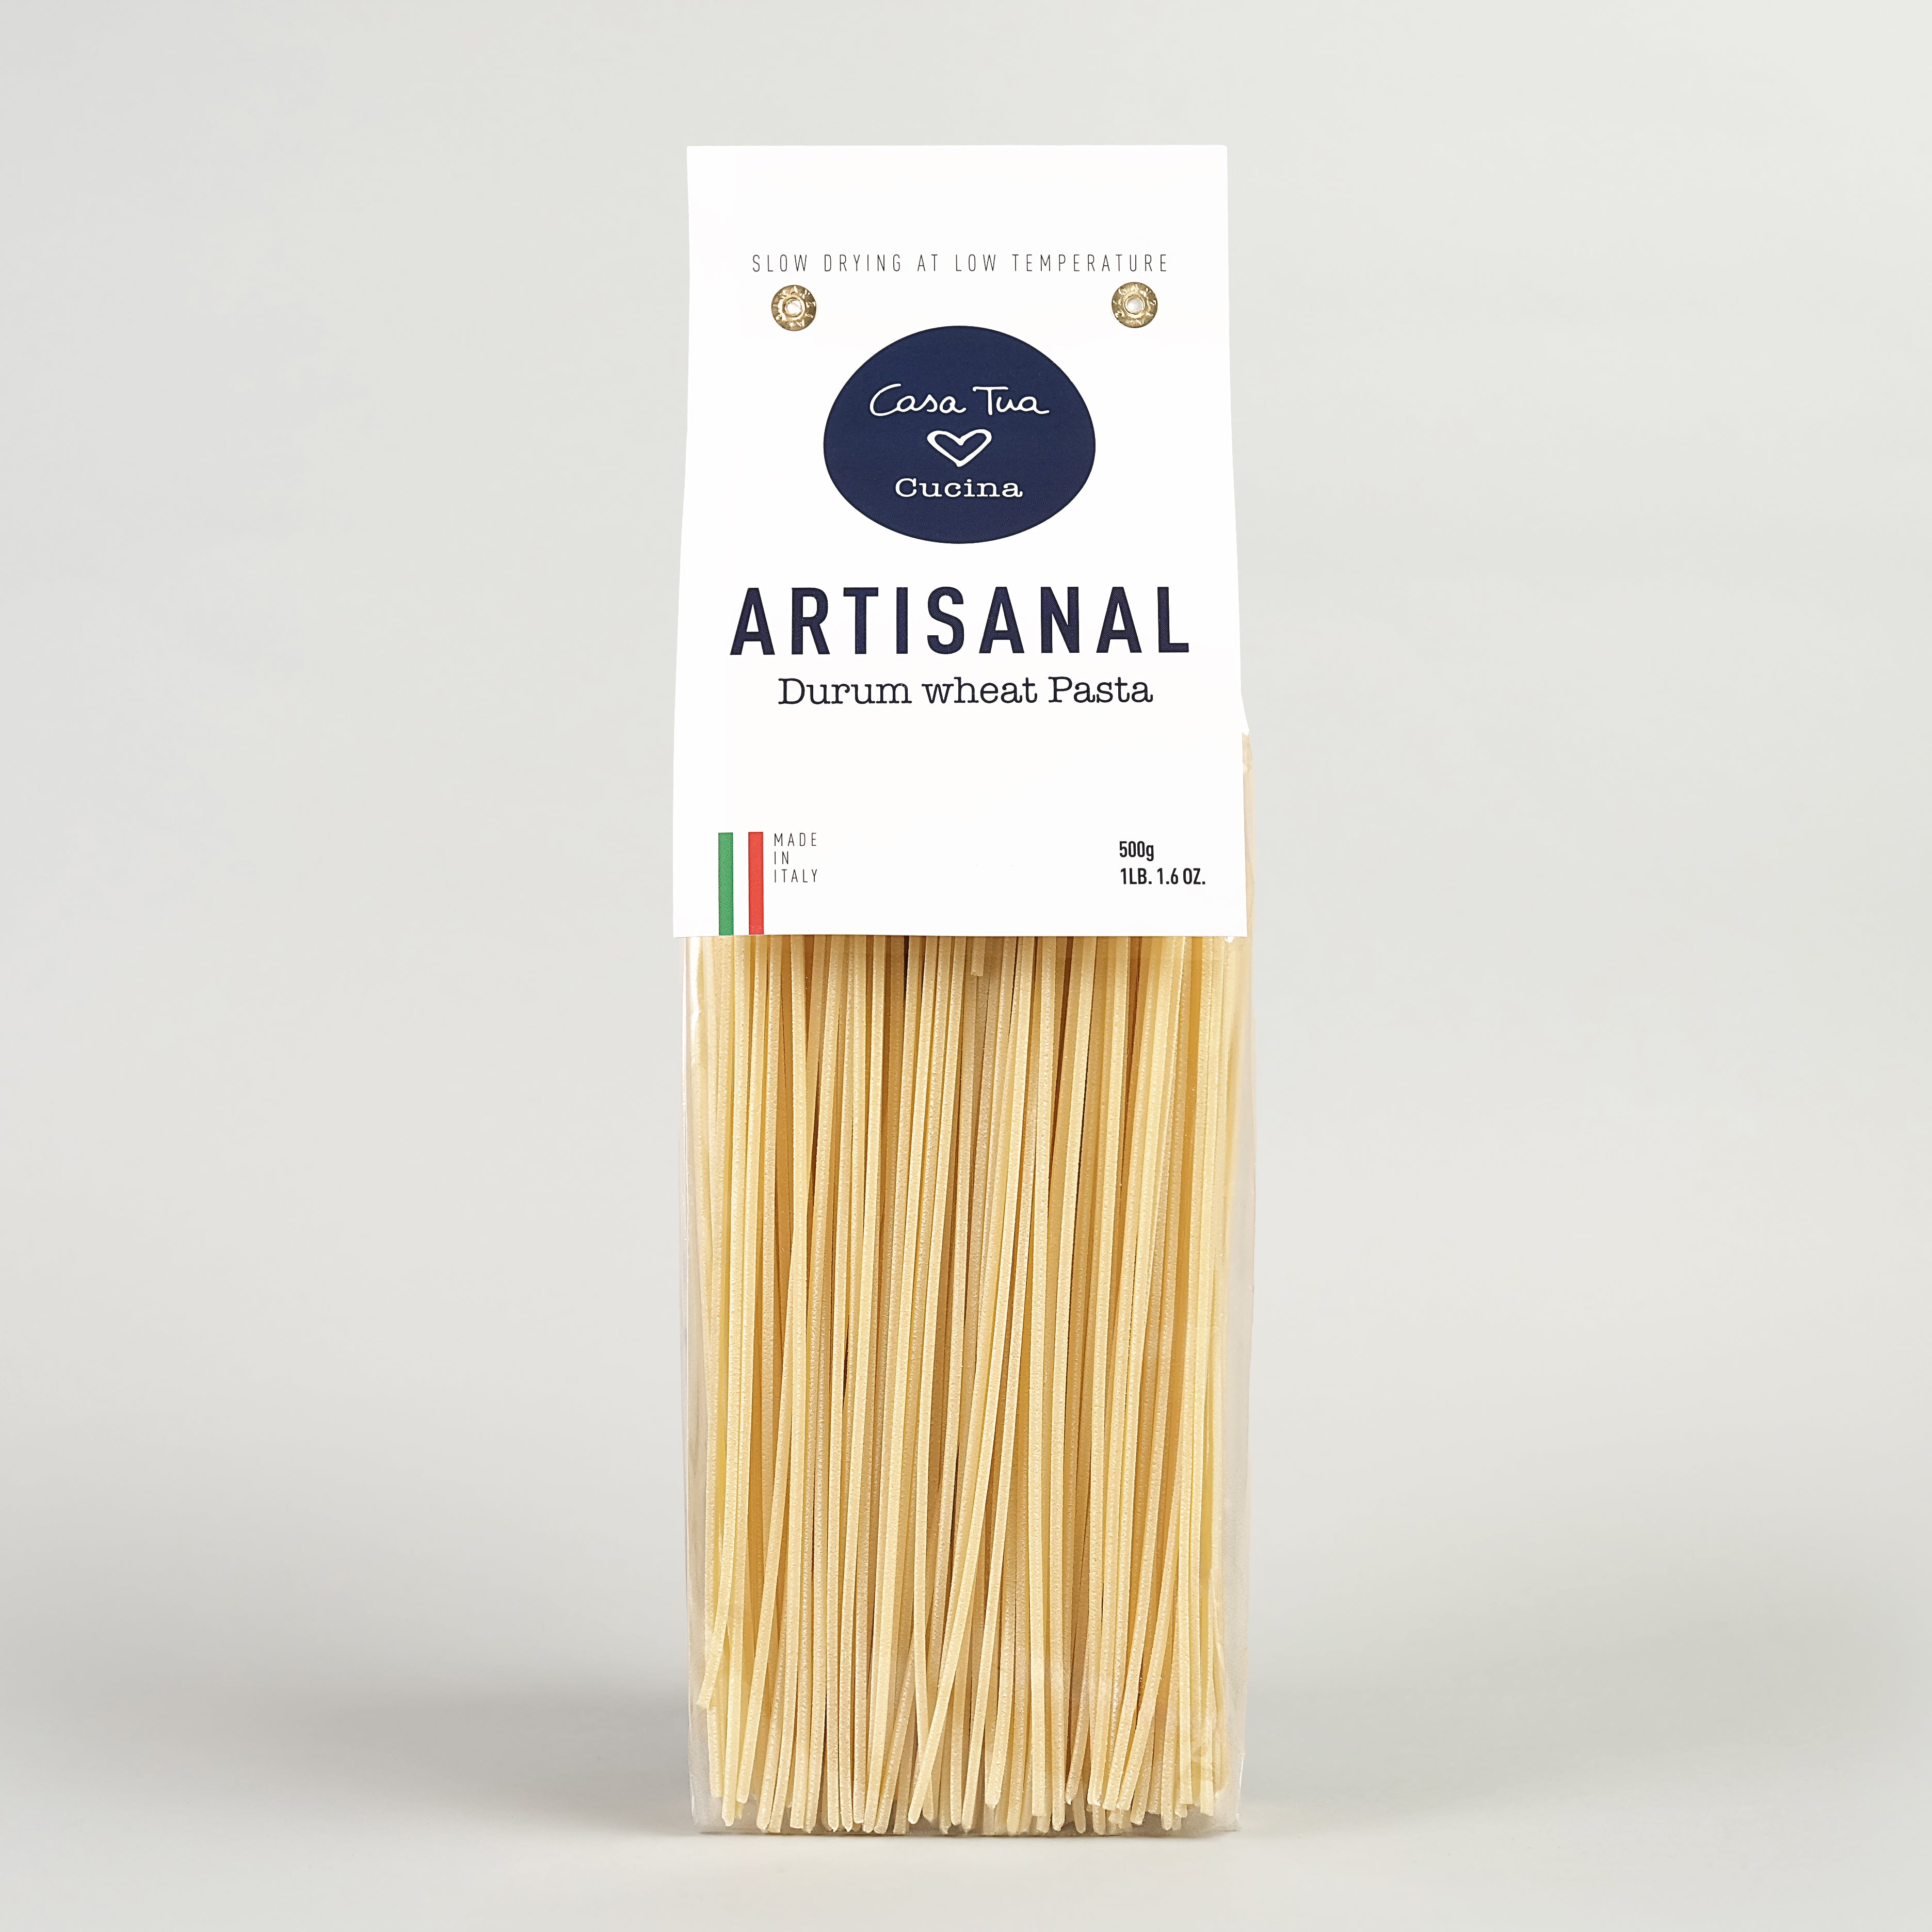 Artisanal Durum Wheat Pasta “Linguine” - 1lb